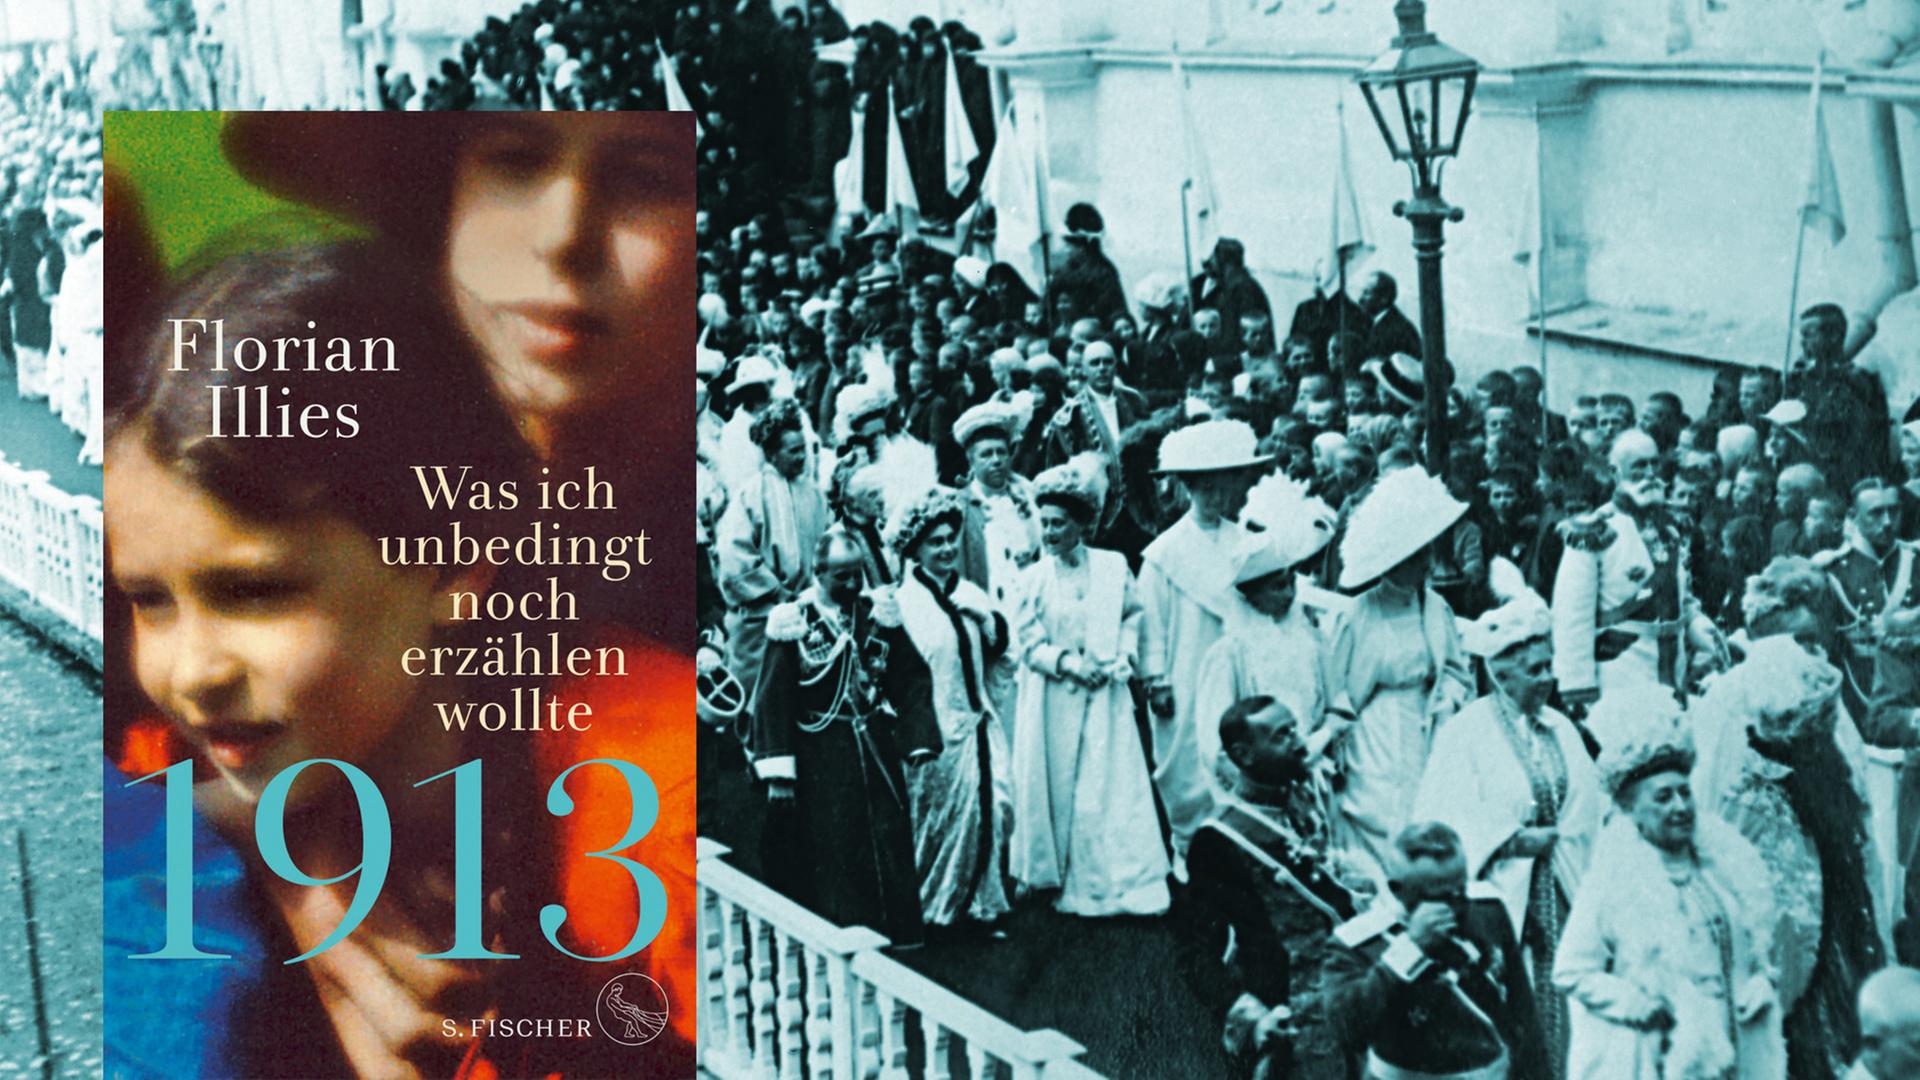 Das Cover des Buches "1913. Was ich noch erzählen wollte" vor einem Foto des Festumzuges anlässlichen des 300-jährigen Thronjubiläums der Romanows.